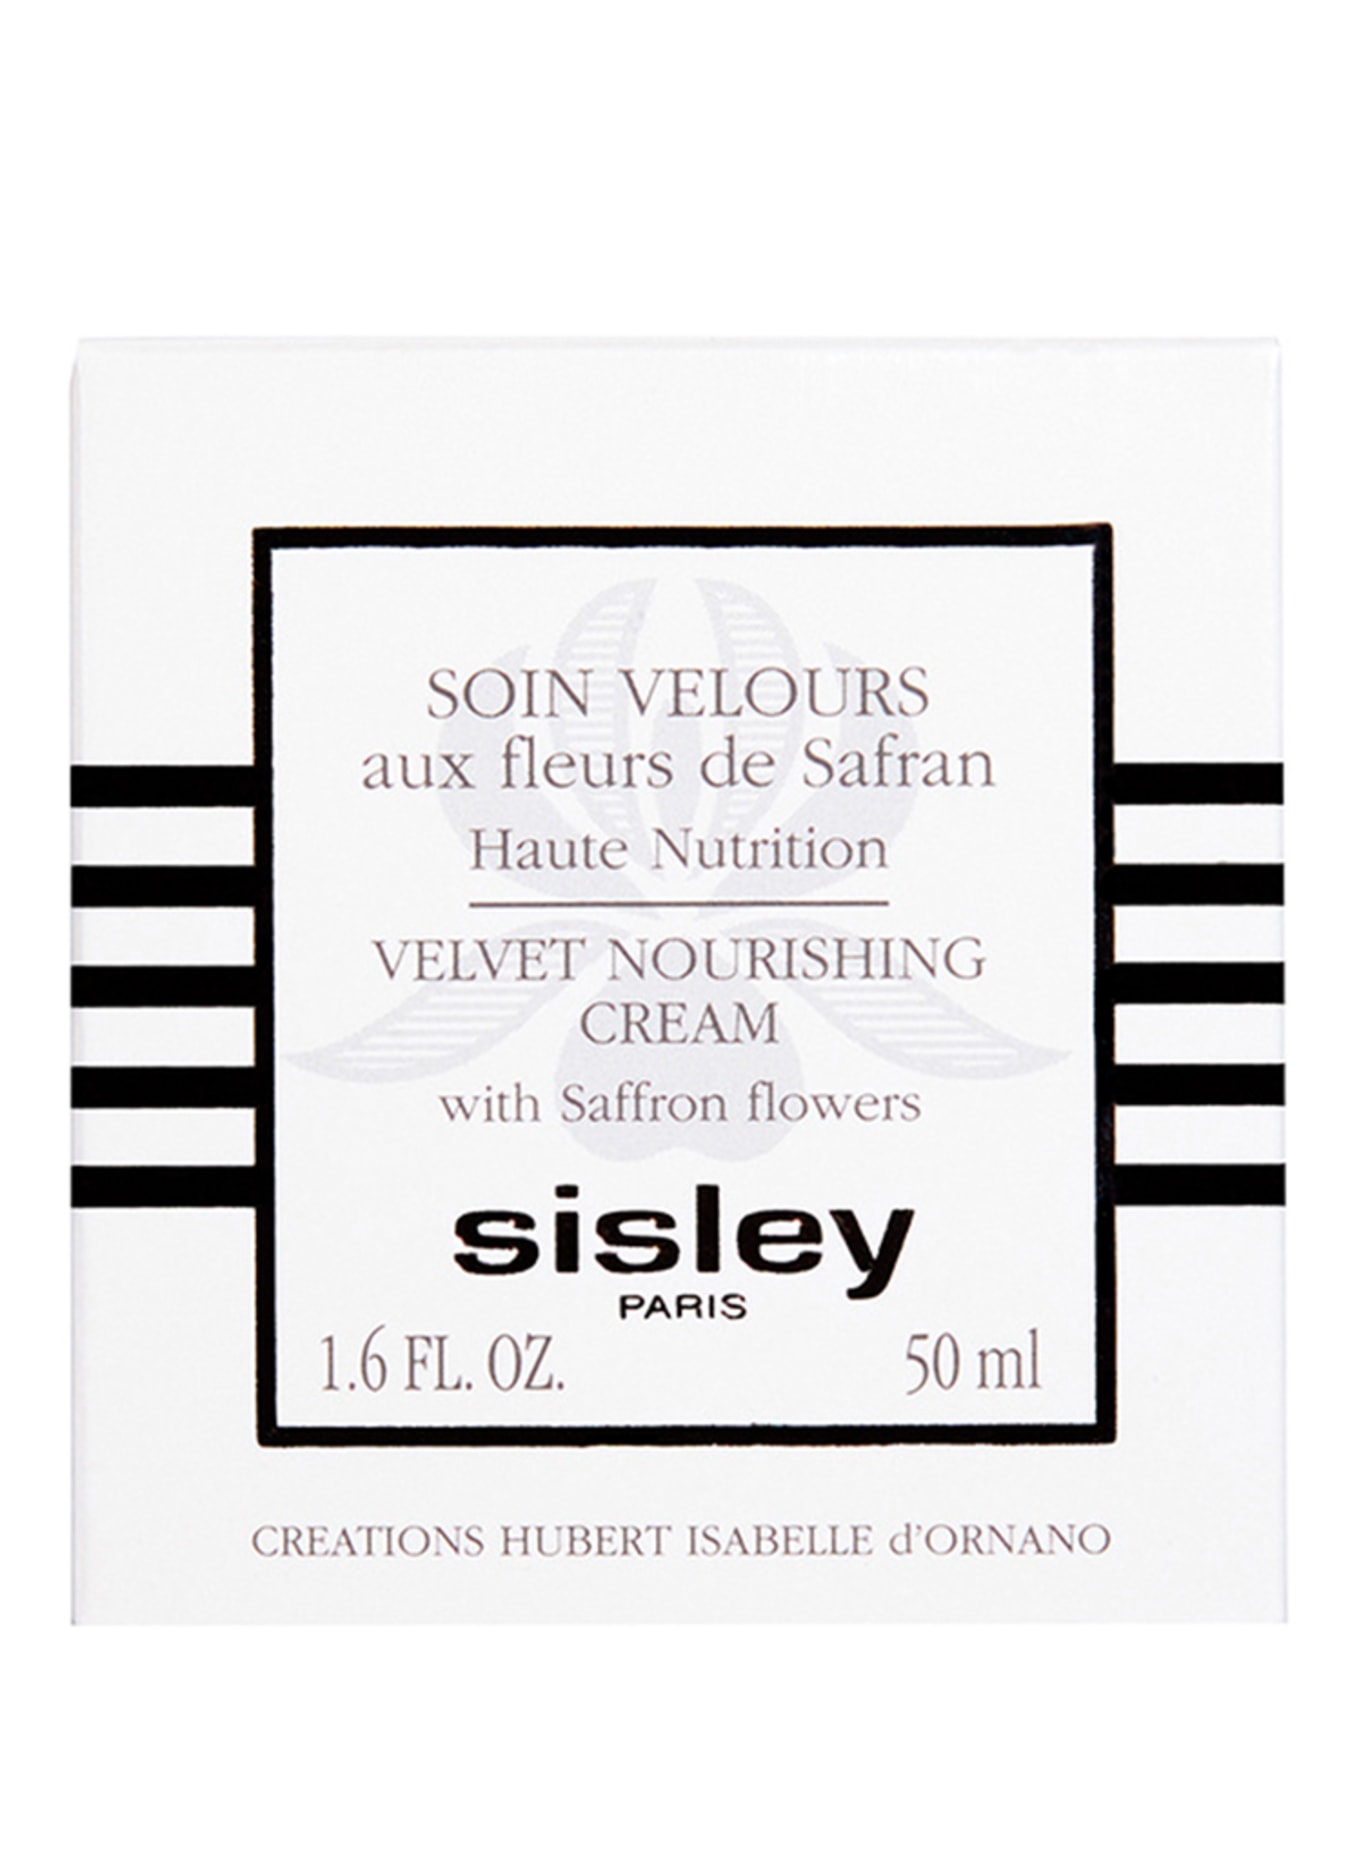 sisley Paris SOIN VELOURS AUX FLEURS DE SAFRAN (Bild 2)